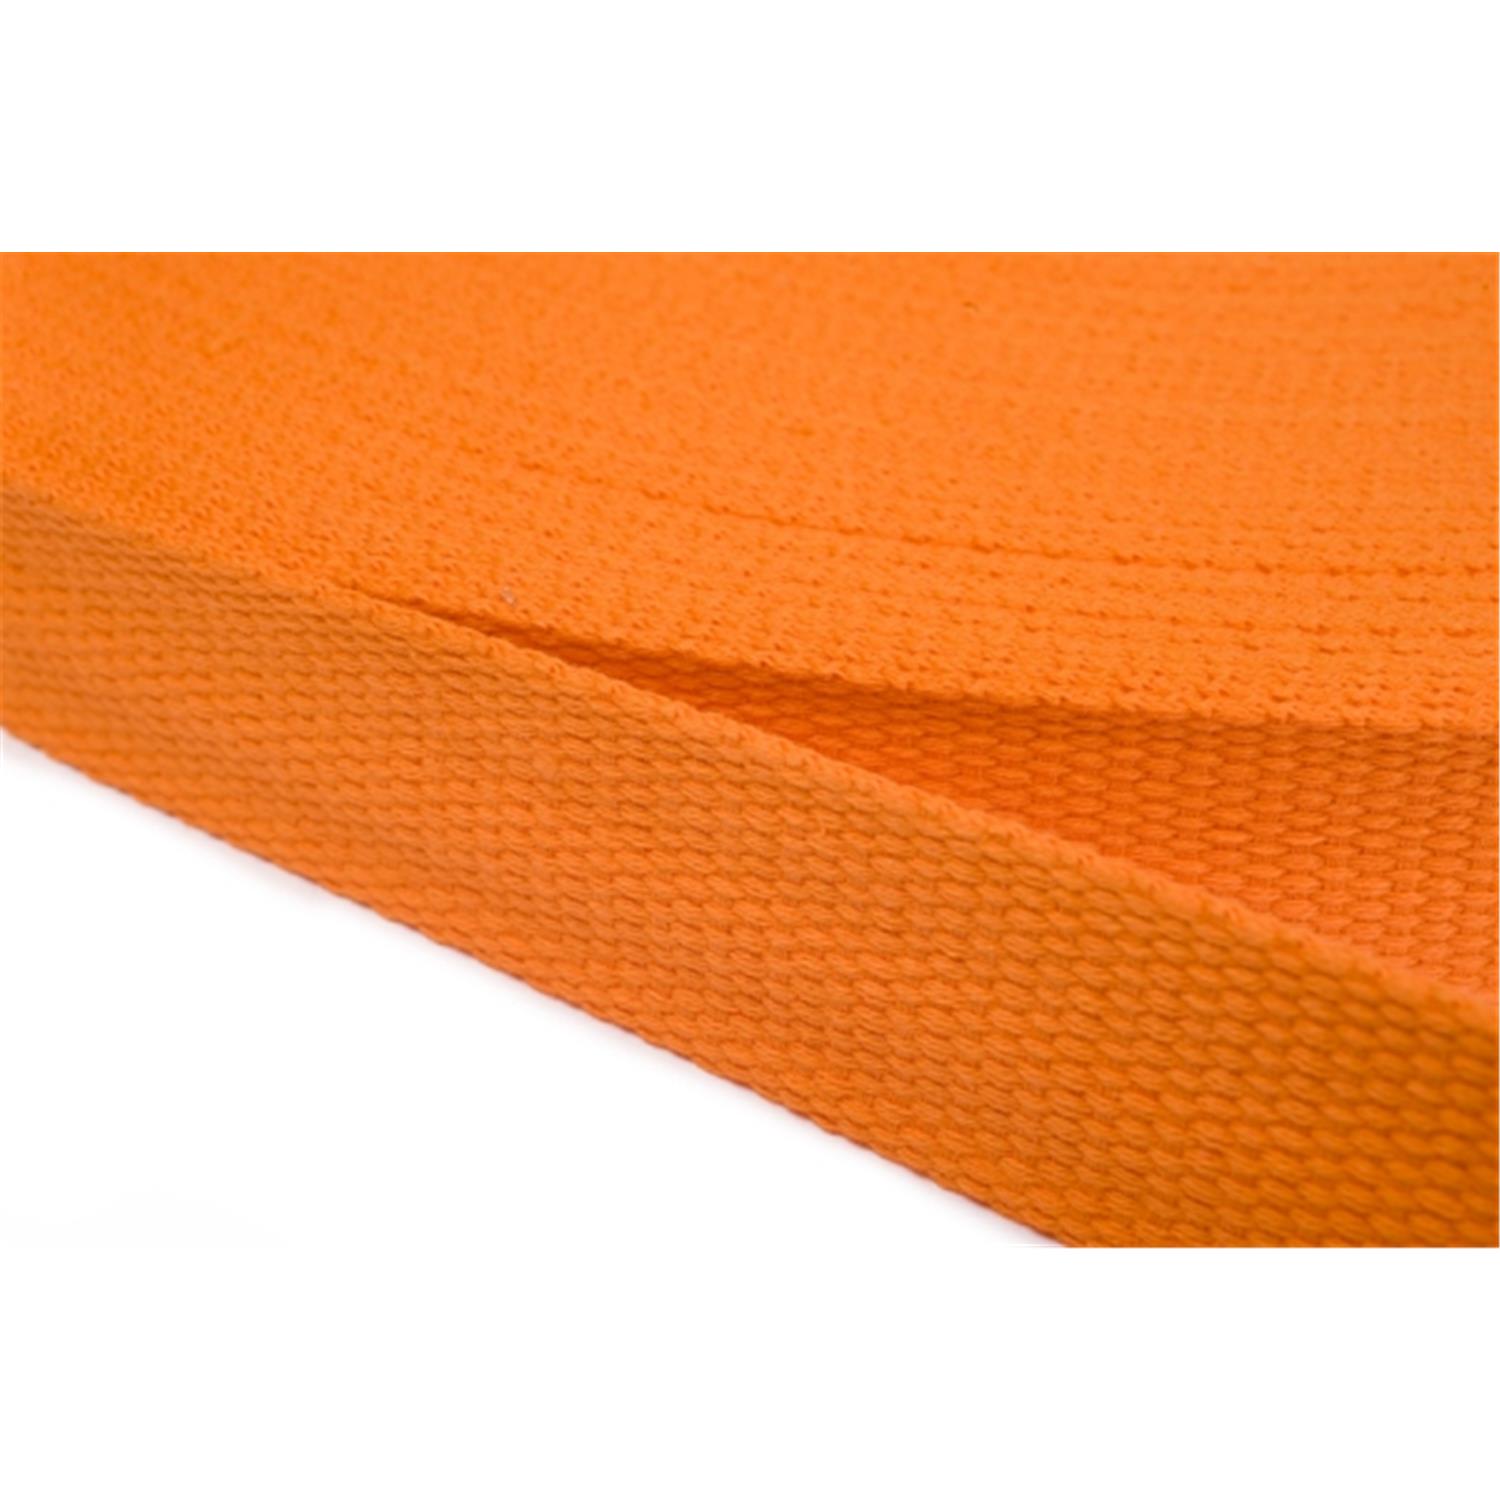 Gurtband aus Baumwolle 25mm in 20 Farben 06 - orange 12 Meter